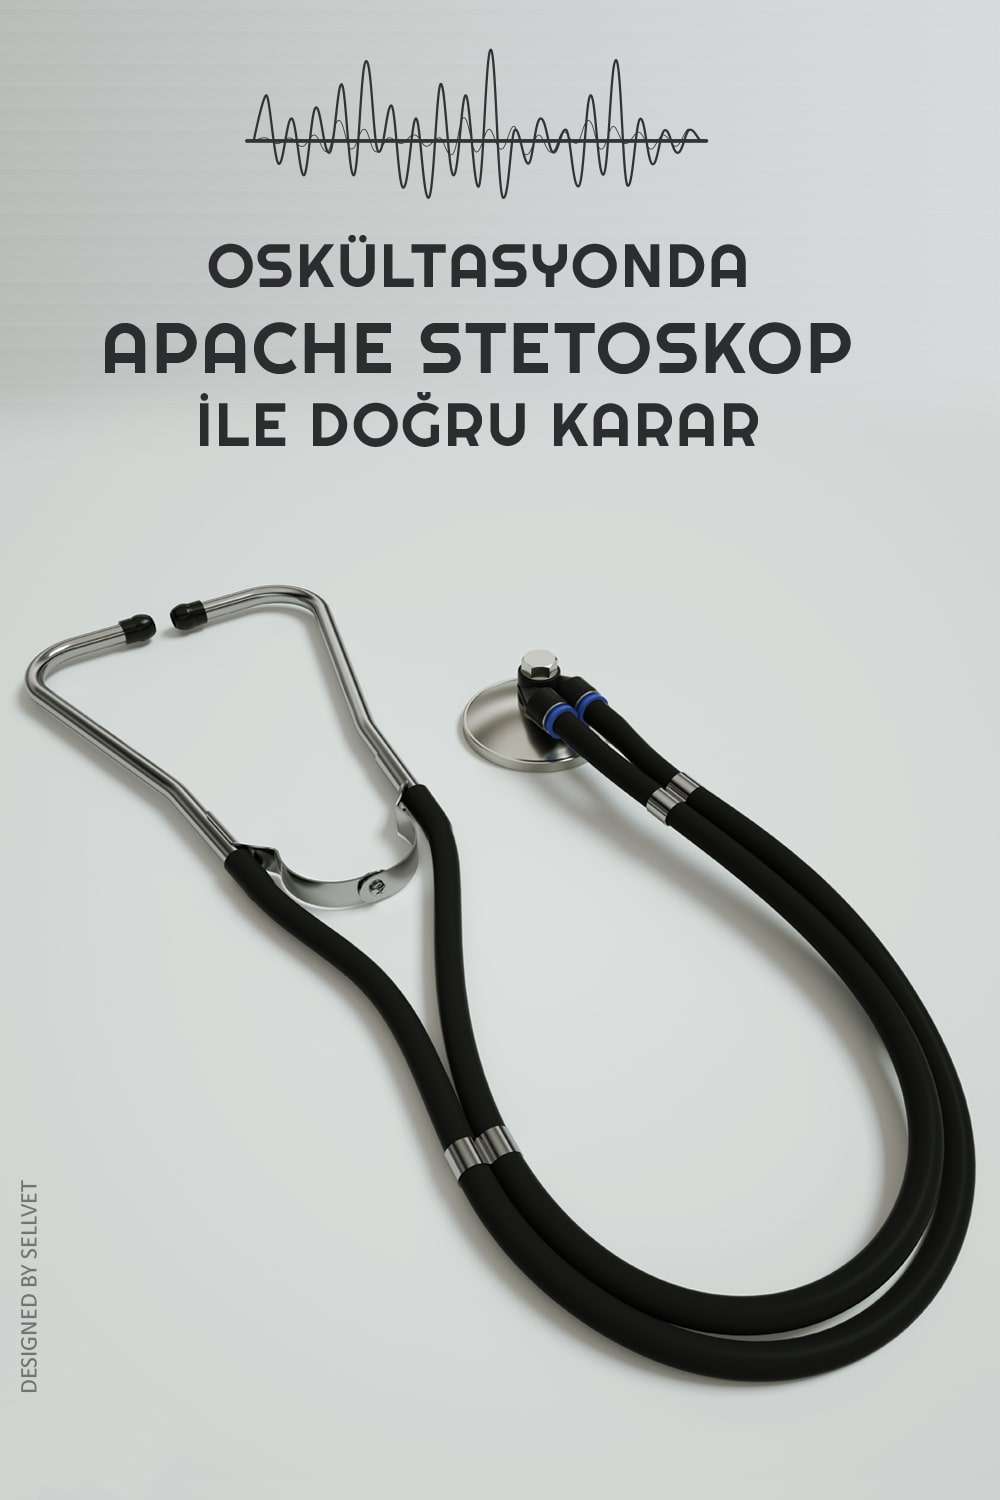 Oskültasyon için Kaliteli stetoskop Apache 2 model